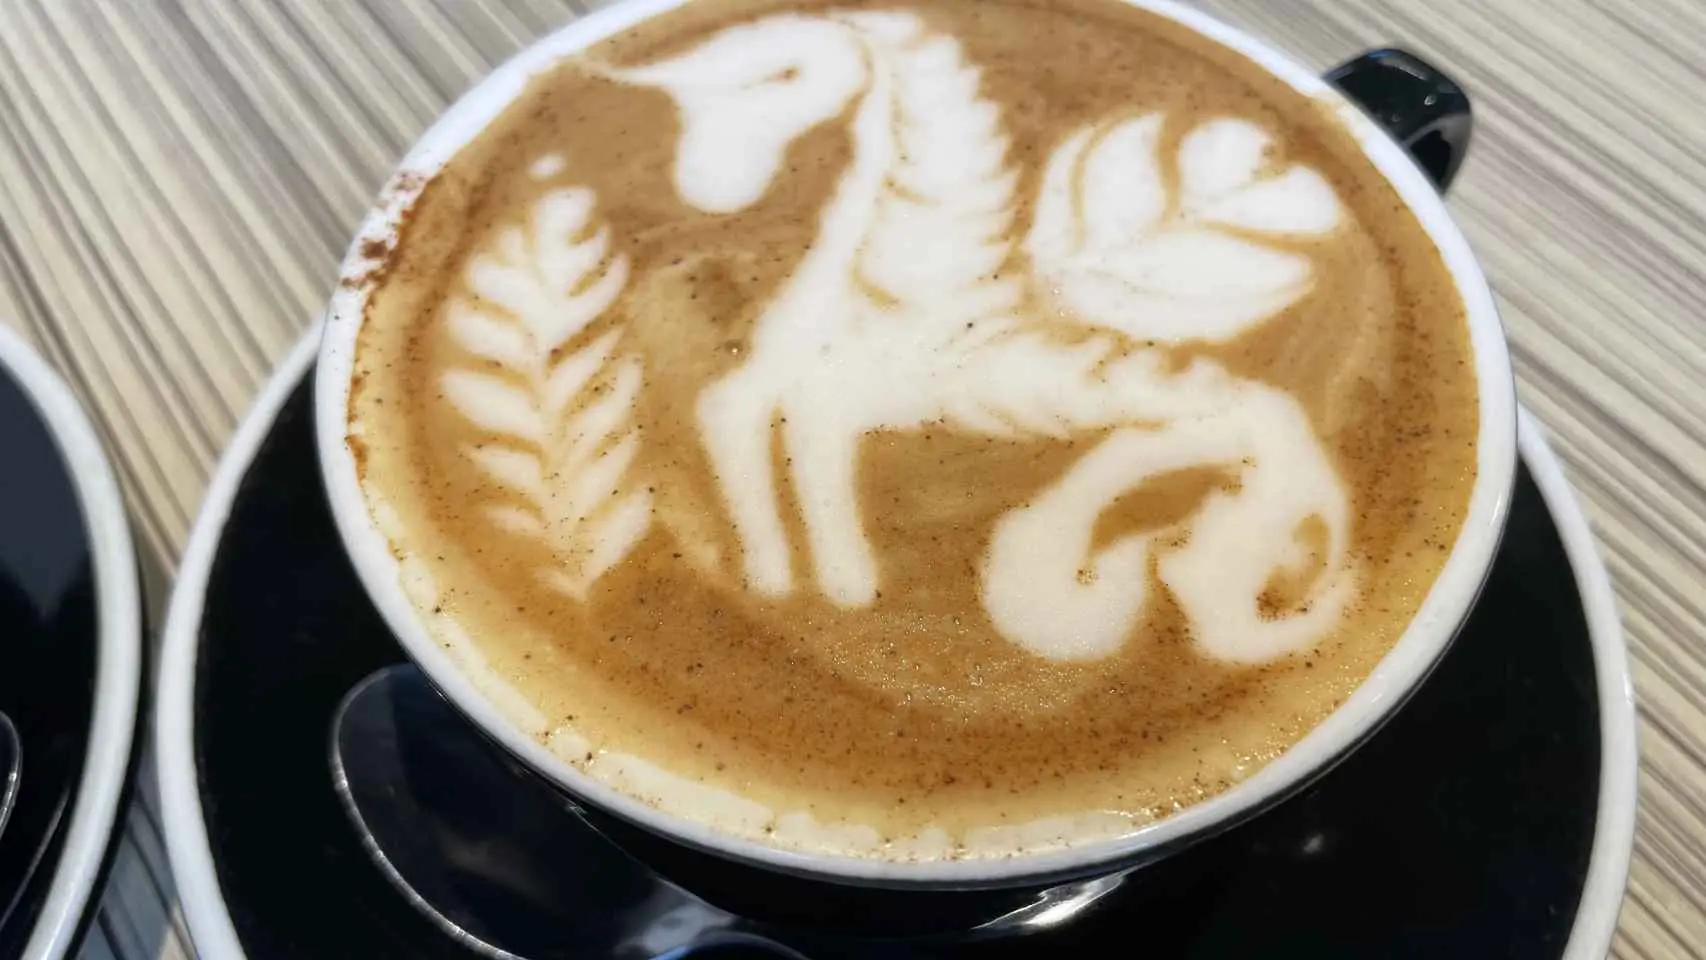 dibujos en el cafe arte latte - Qué significa arte latte